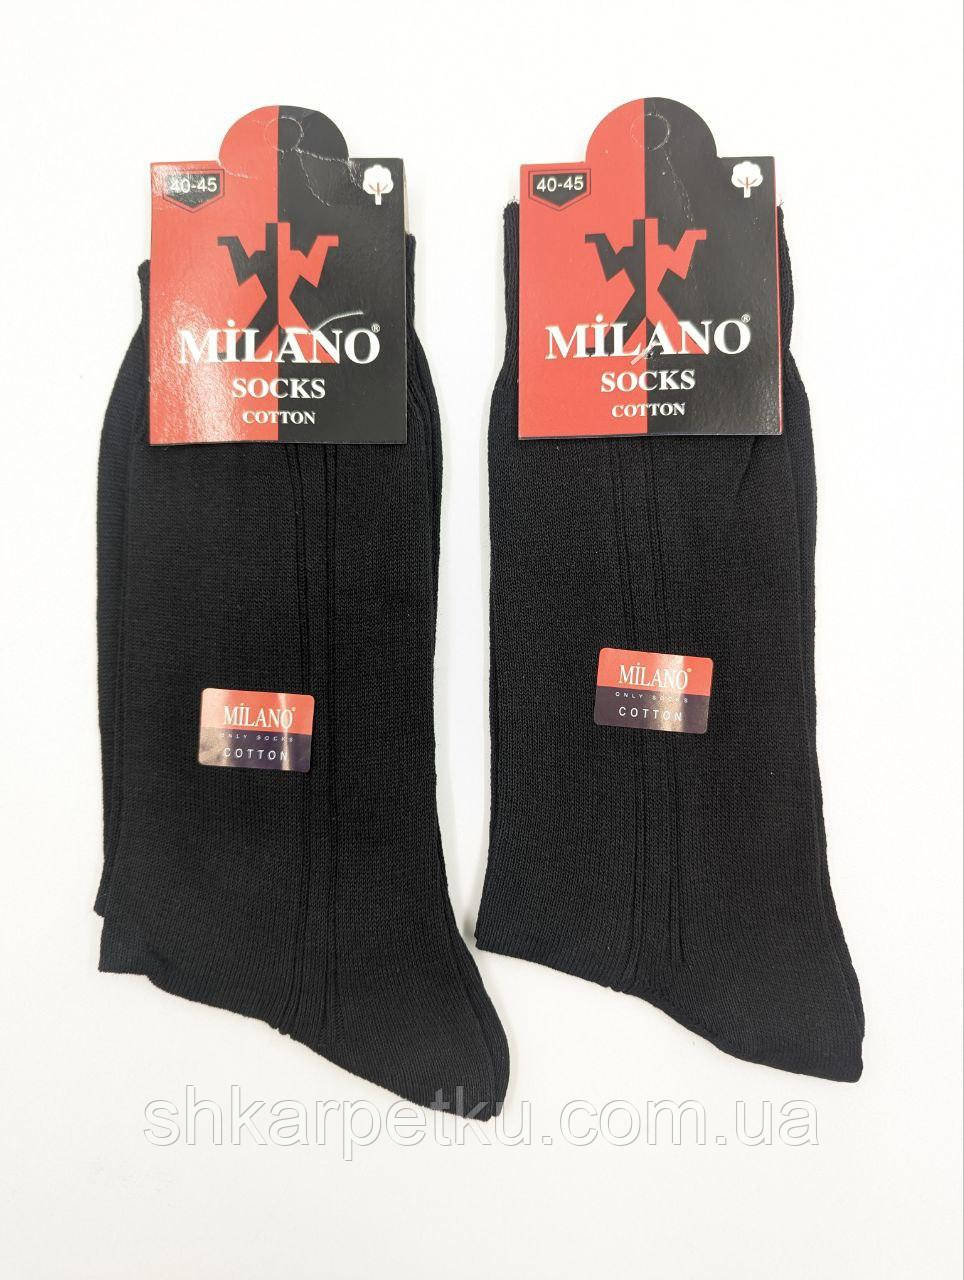 Чоловічі високі шкарпетки Milano, класичні літні тонкі, 100% бавовна, розмір 41-44 12 пар\уп. чорні